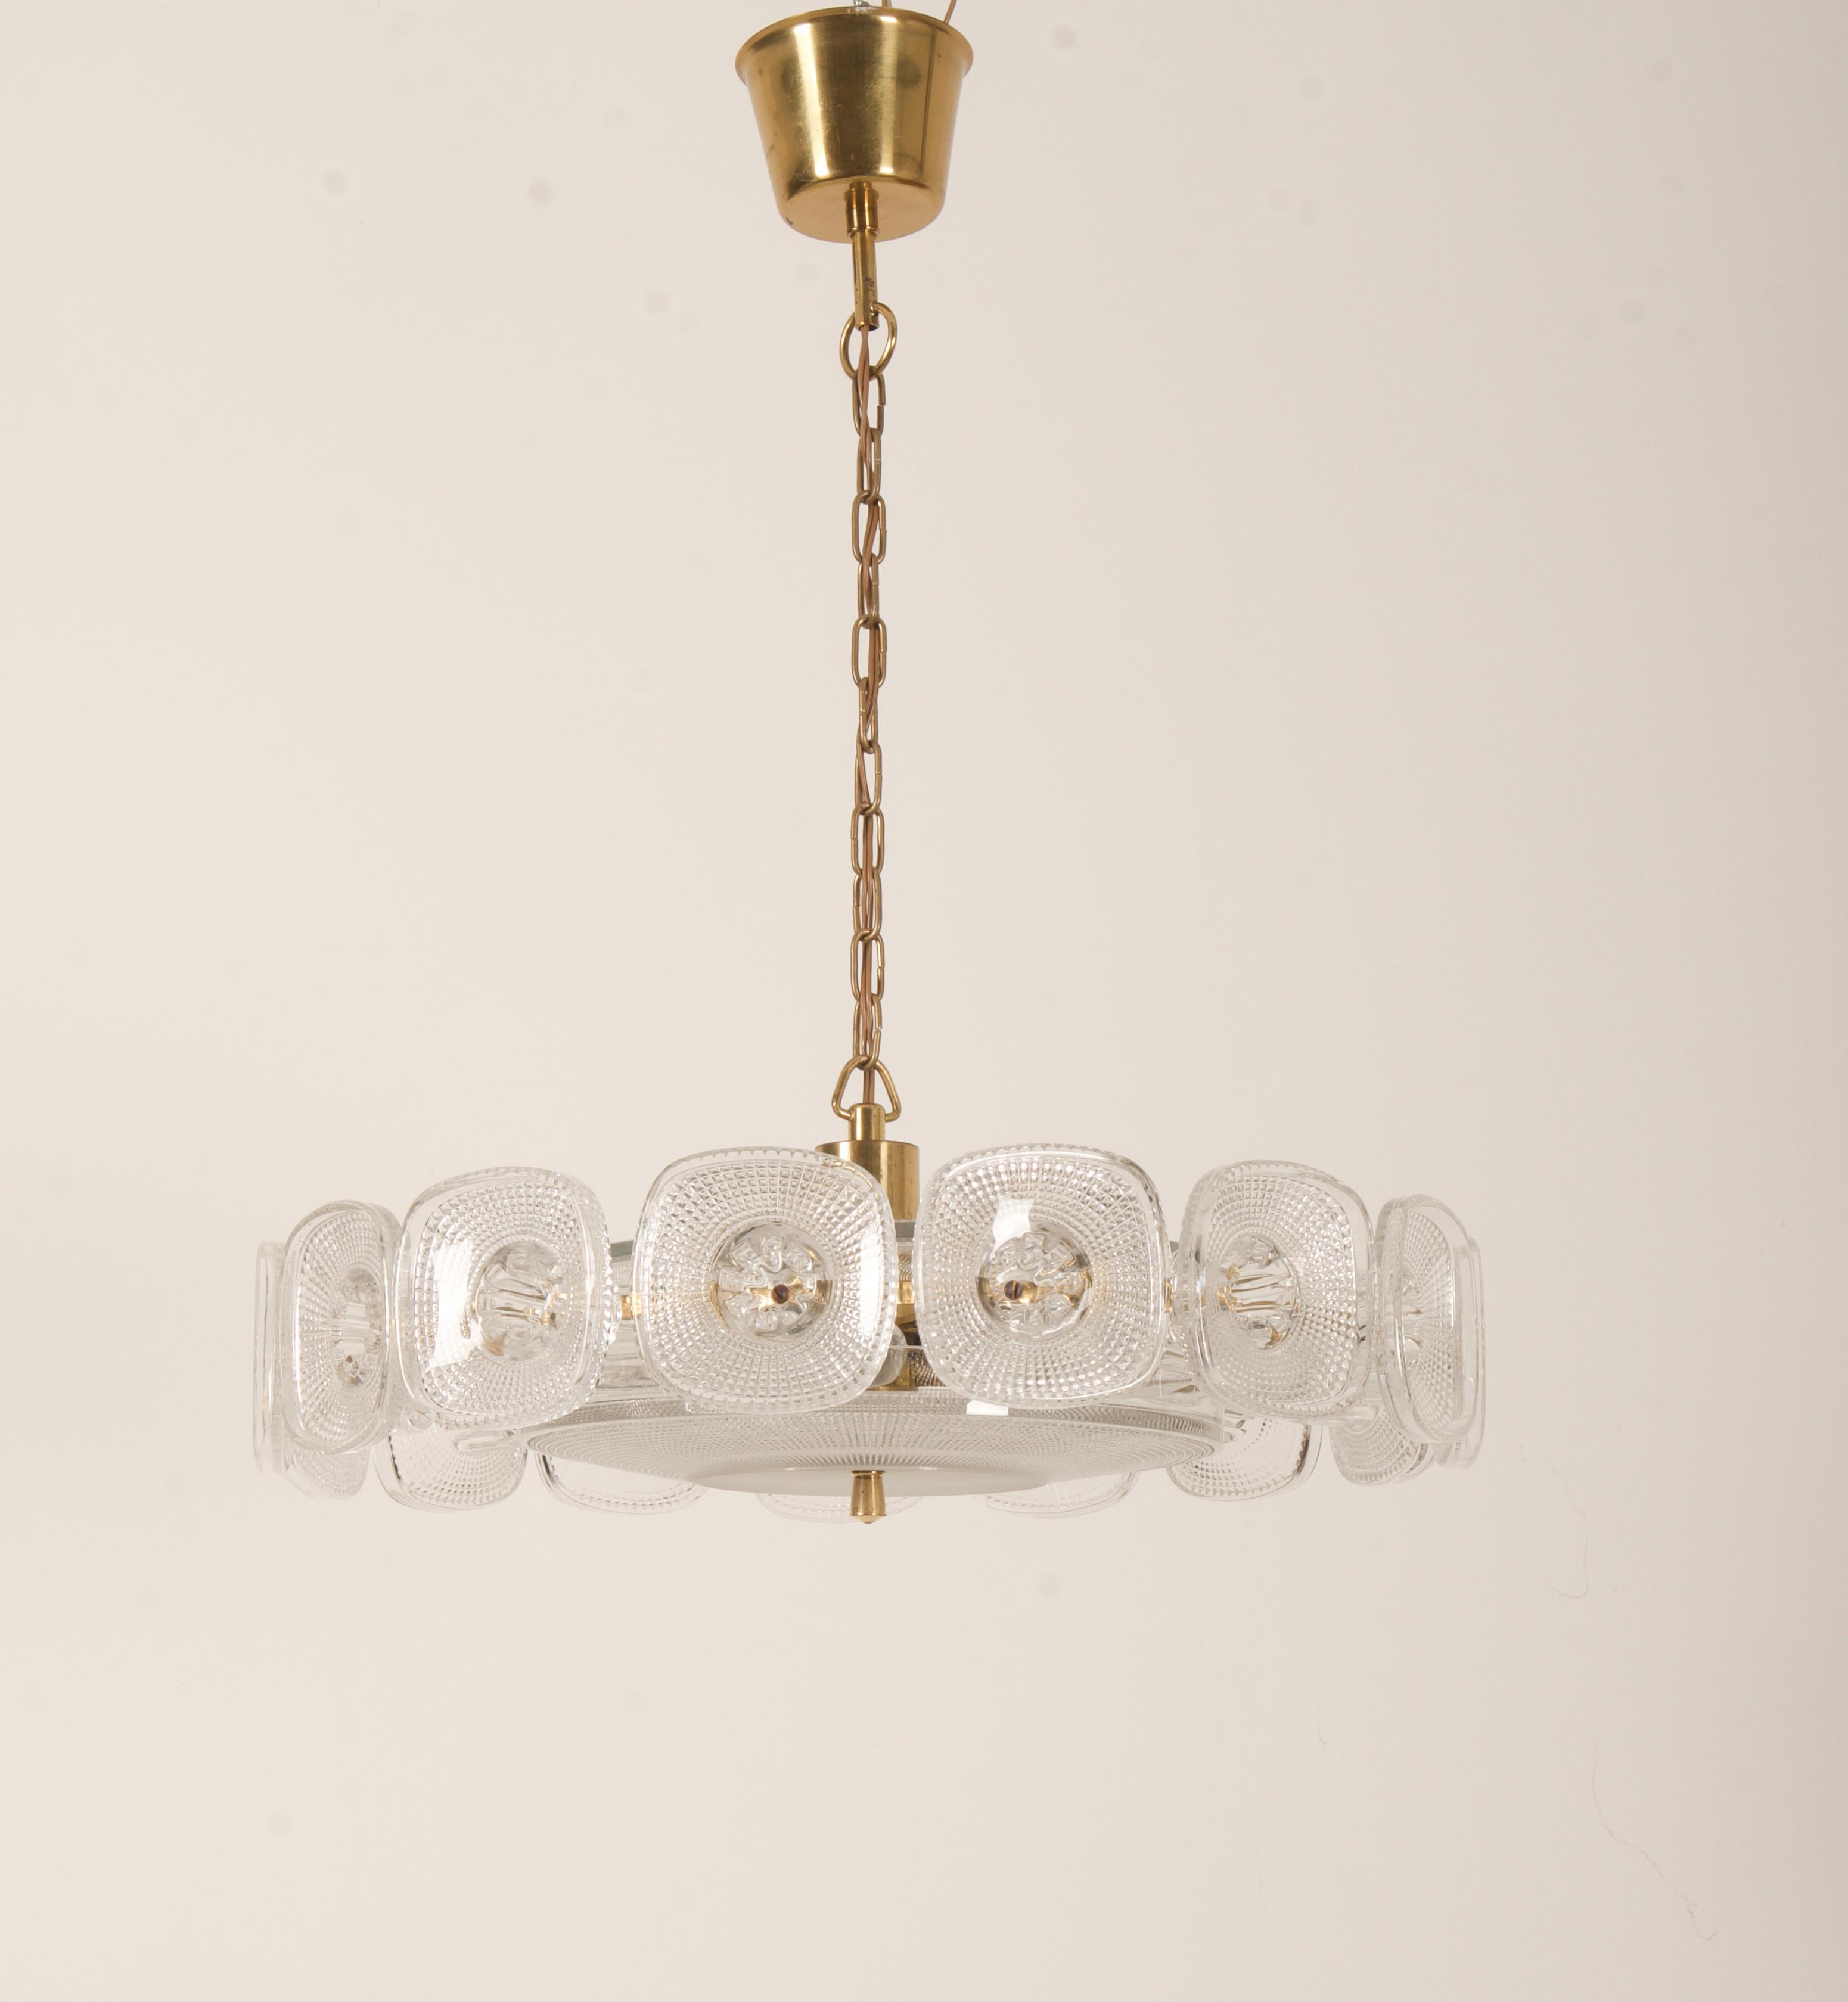 Messingkonstruktion vergoldet, mit fünf E14-Fassungen. Das Ornamentdekor aus Pressglas, entworfen von Kjell Blomberg für Gullaskrufs glasbruk in Schweden in den 1960er Jahren.